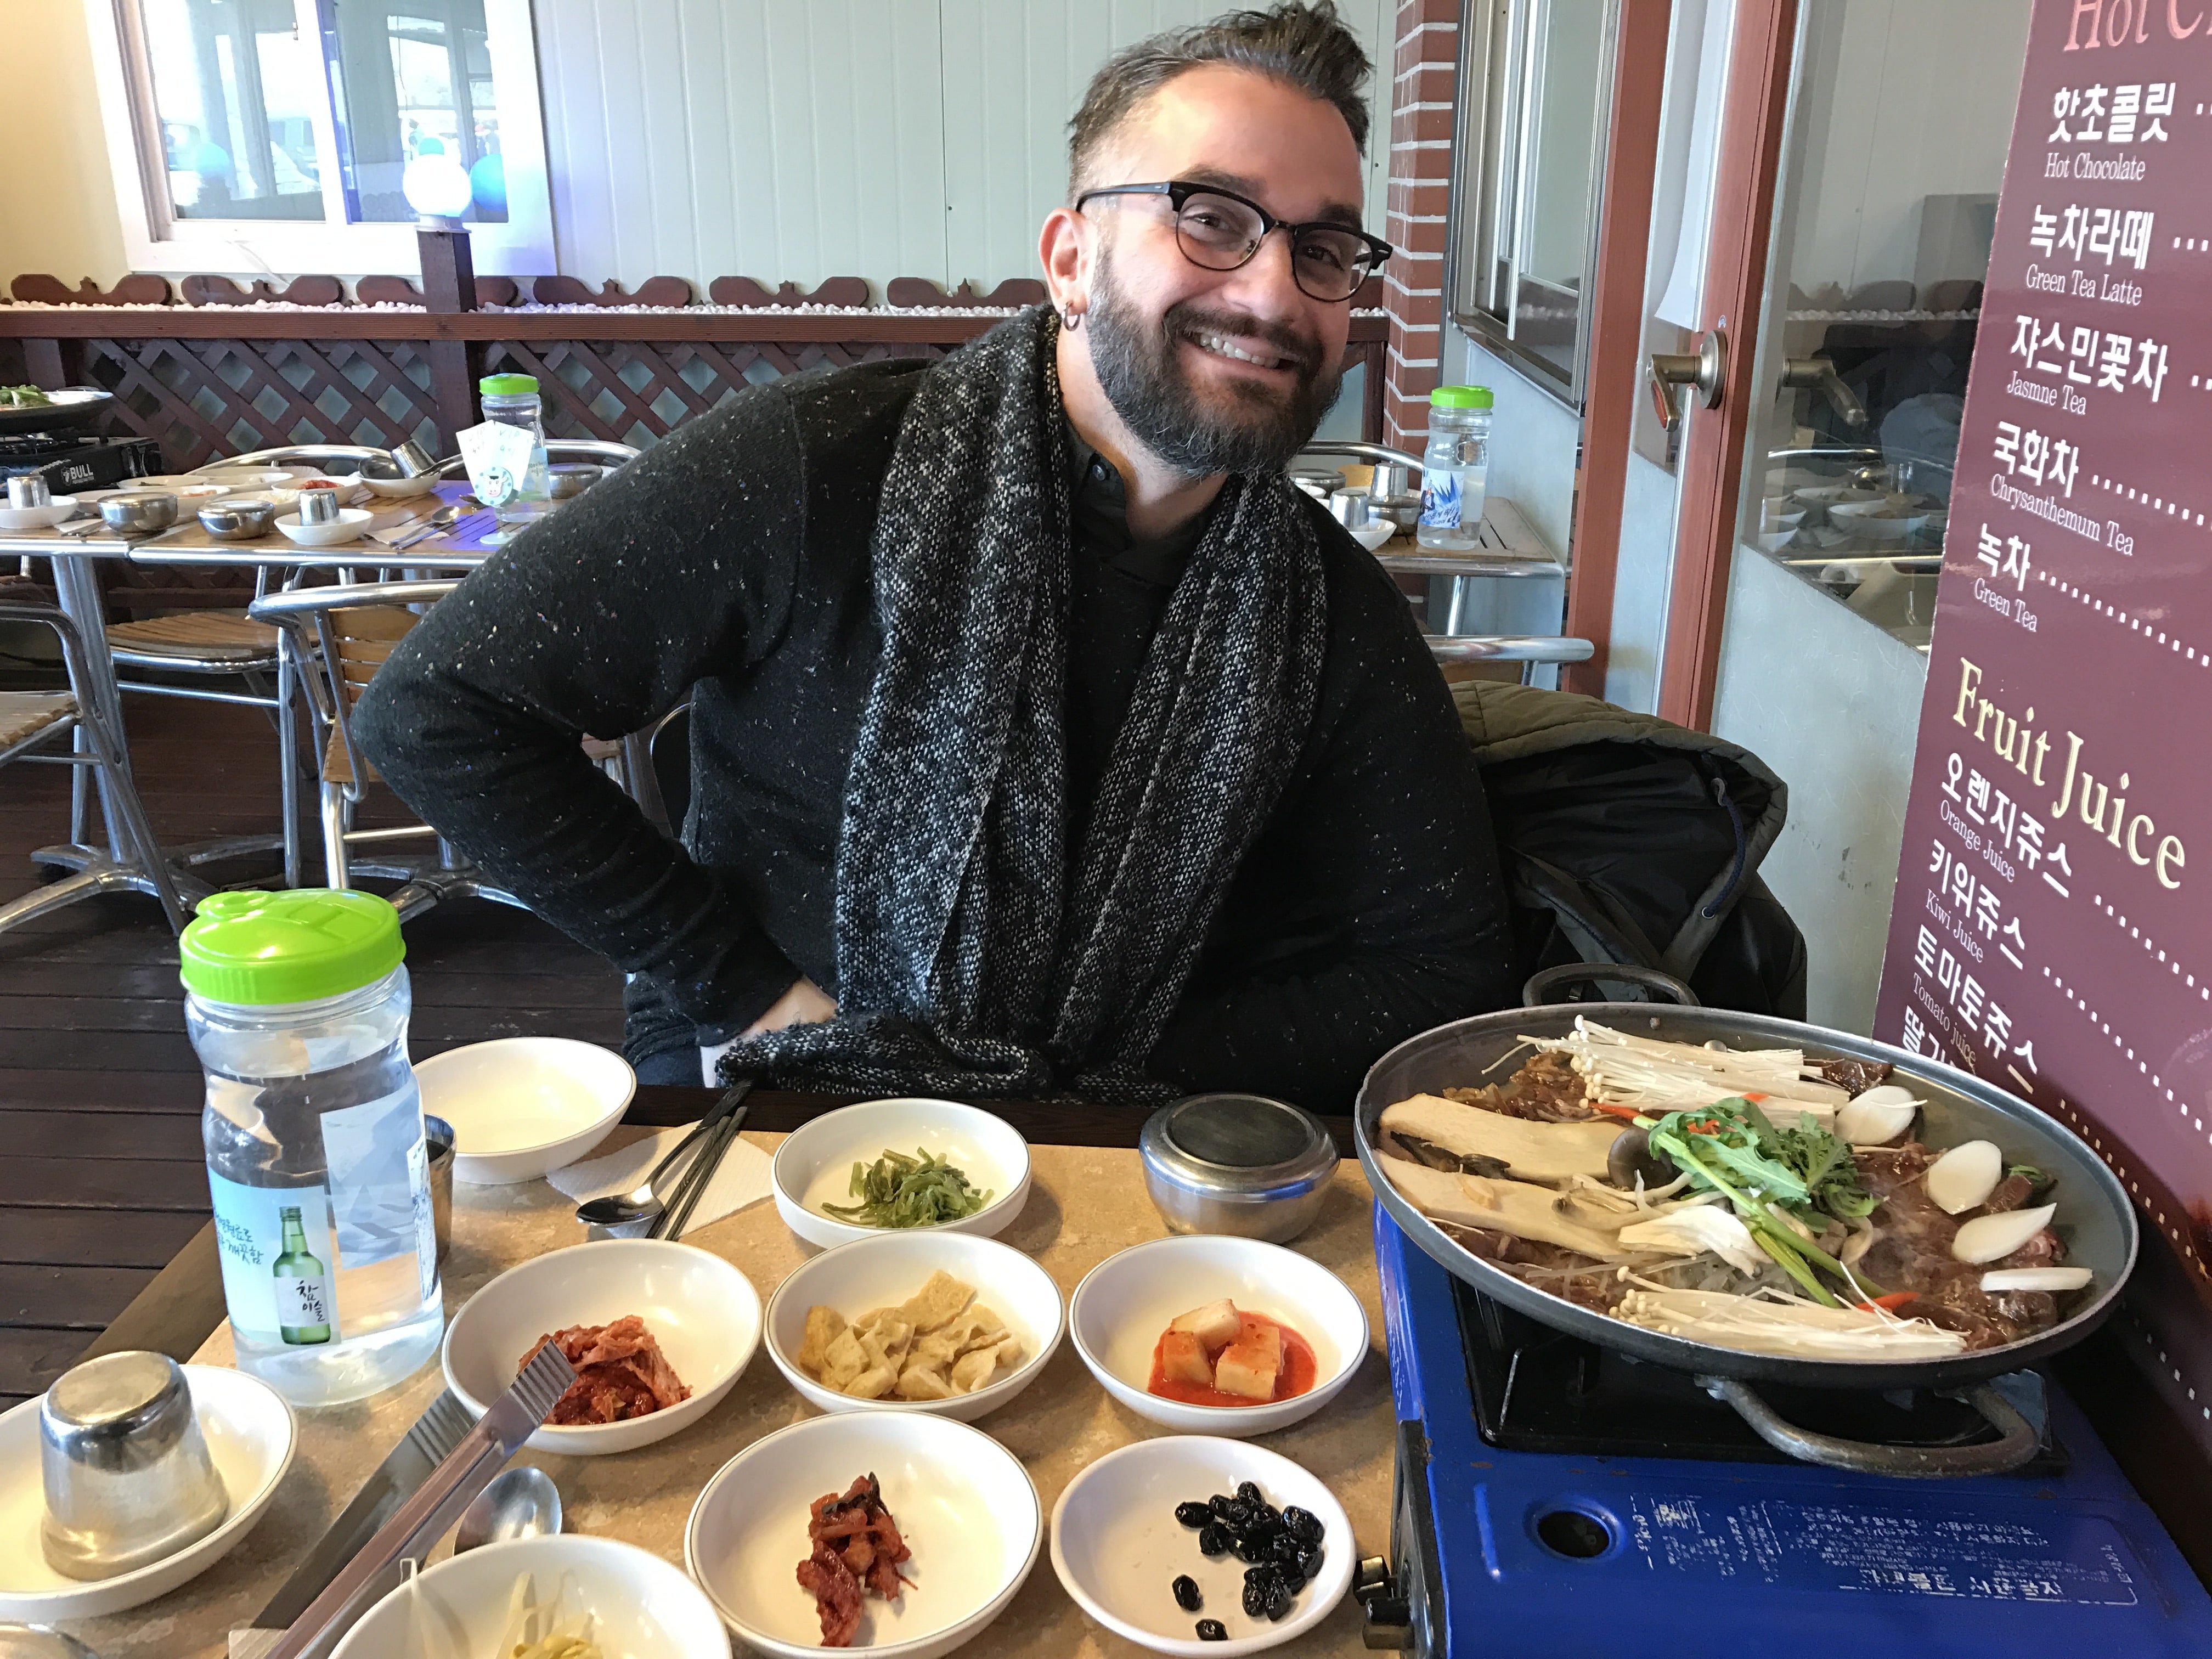 Cosa mangiare in Corea: tutti i piatti che abbiamo provato